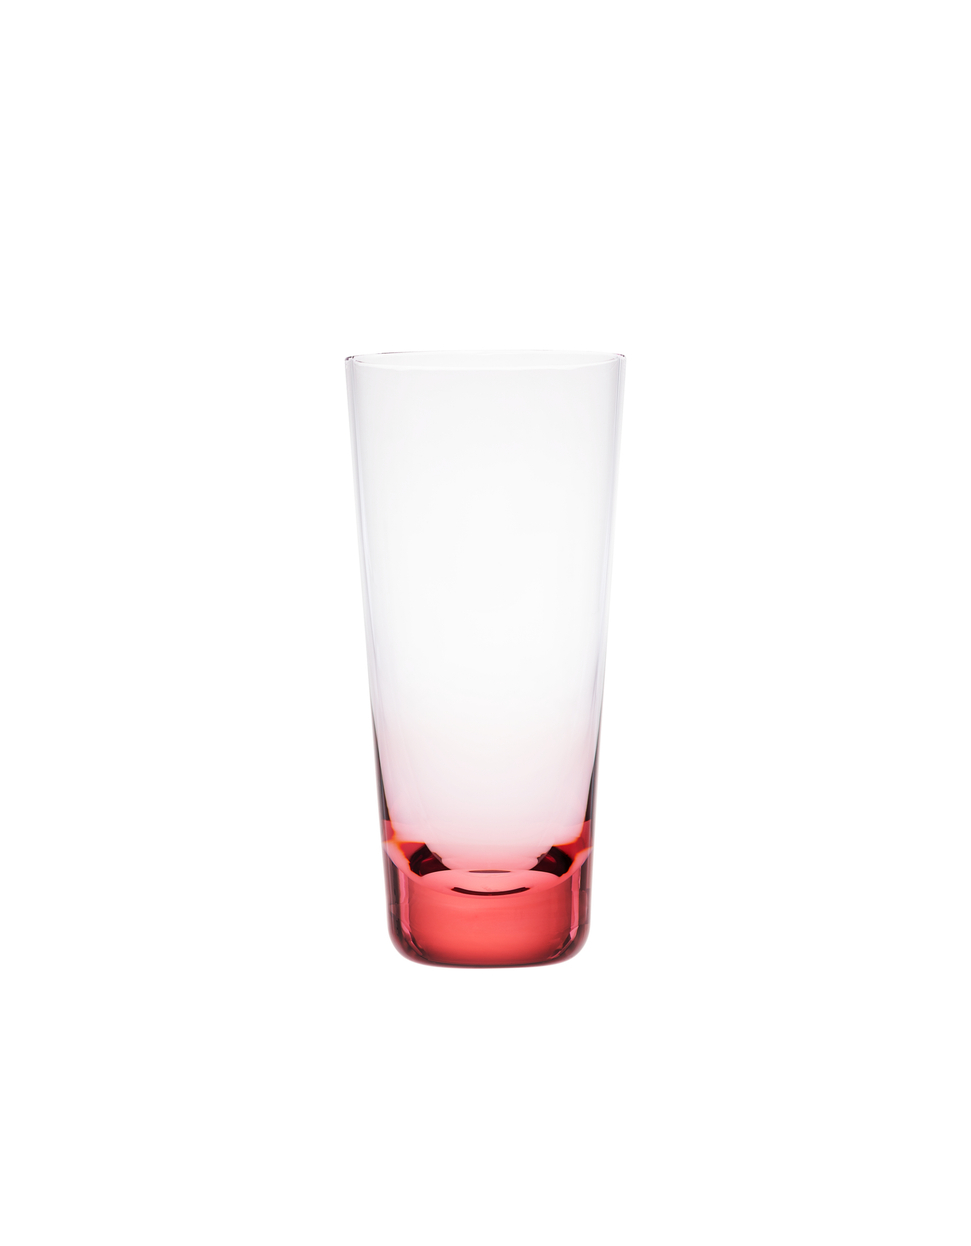 Fluent sklenice, 330 ml